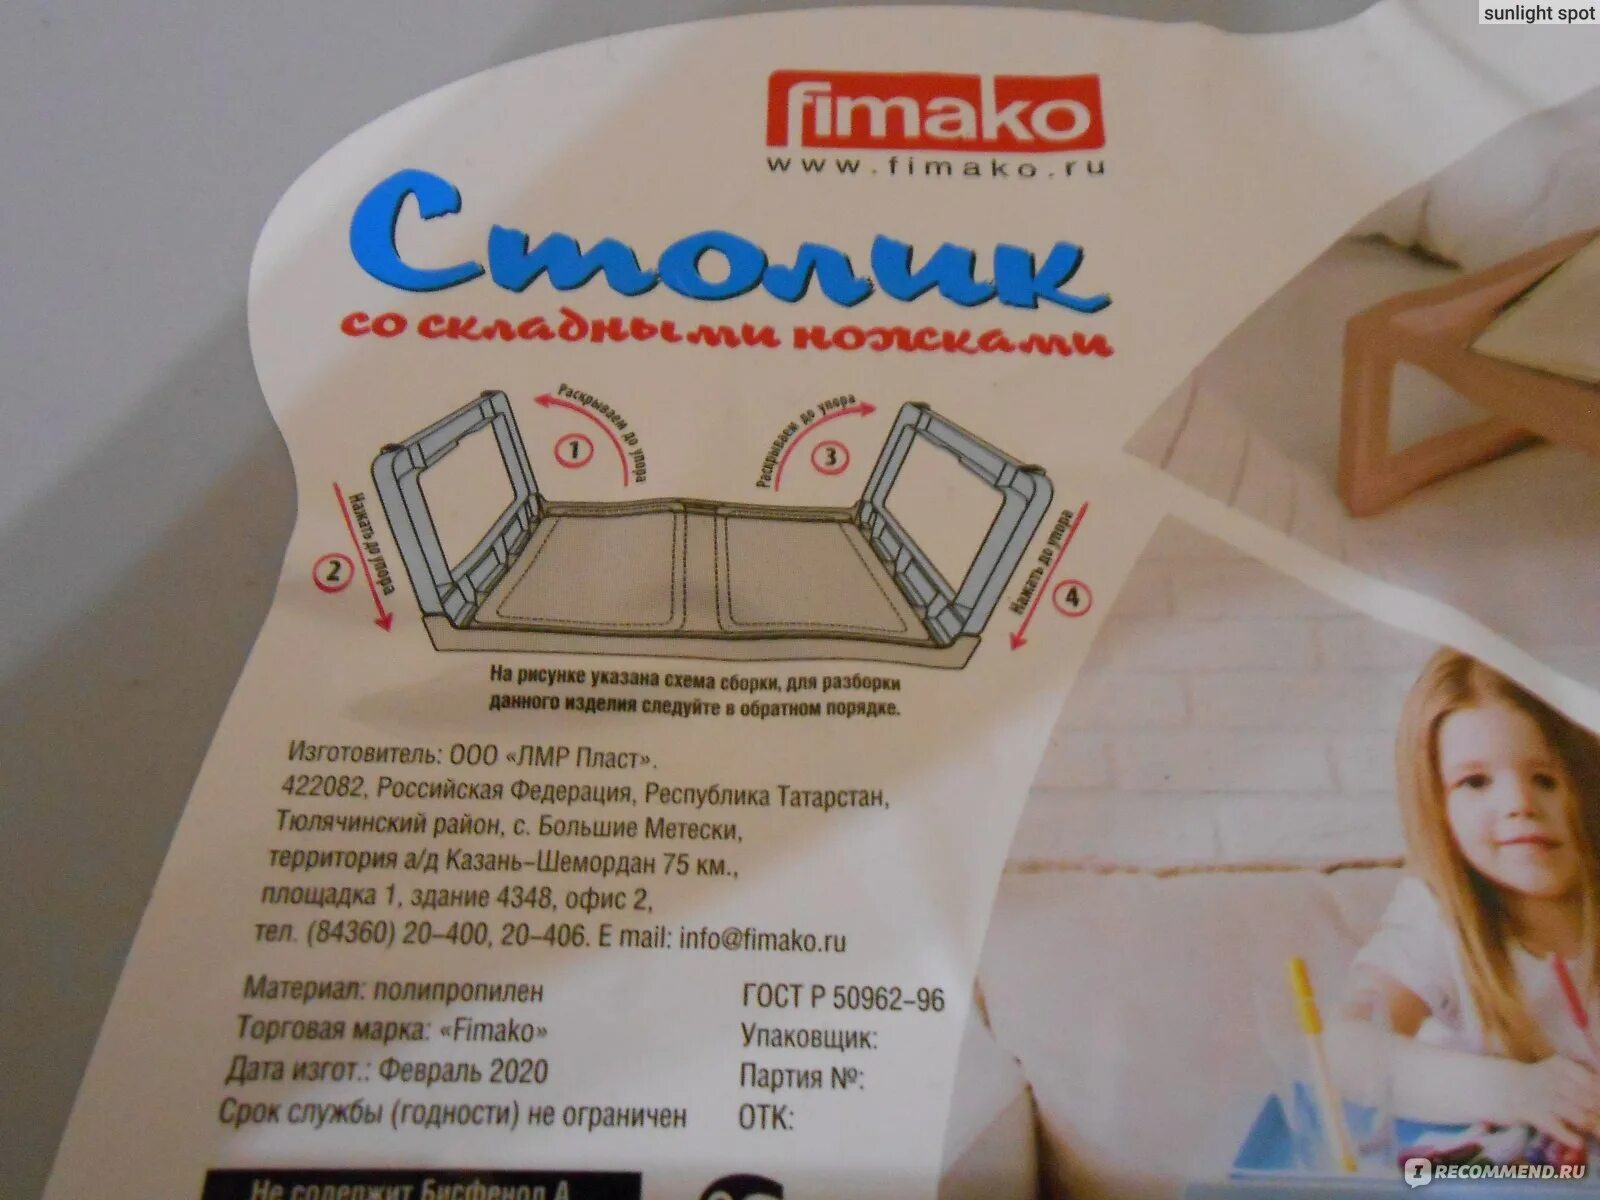 Цену на диван снижали два раза. Столик FIMAKO со складными ножками. Столик подставка FIMAKO. Столик подставка универсальный FIMAKO. Столик подставка FIMAKO светофор.